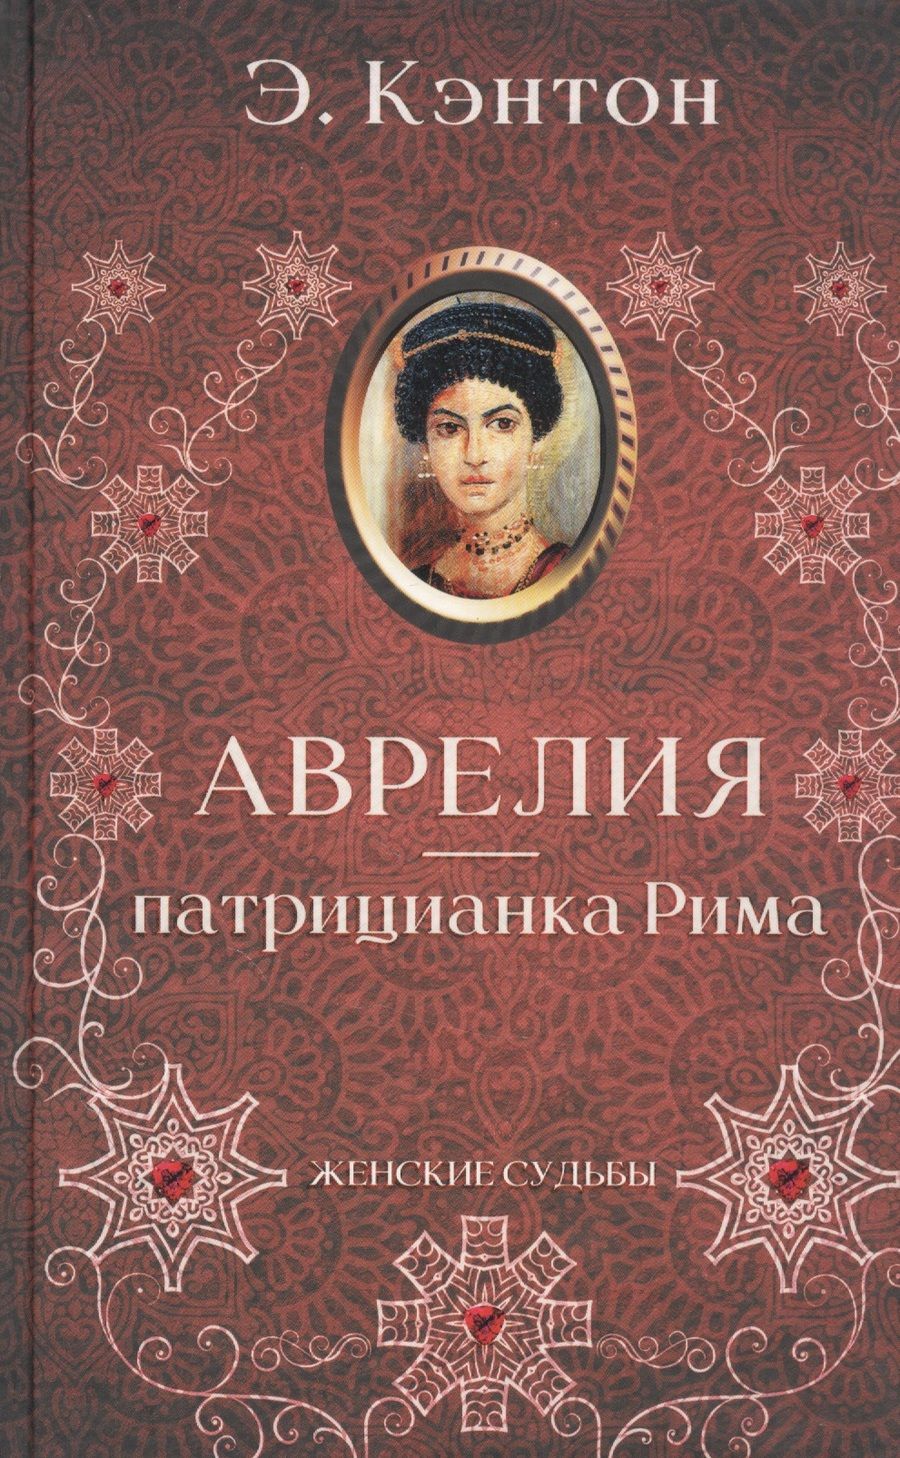 Обложка книги "Э. Кэнтон: Аврелия - патрицианка Рима "